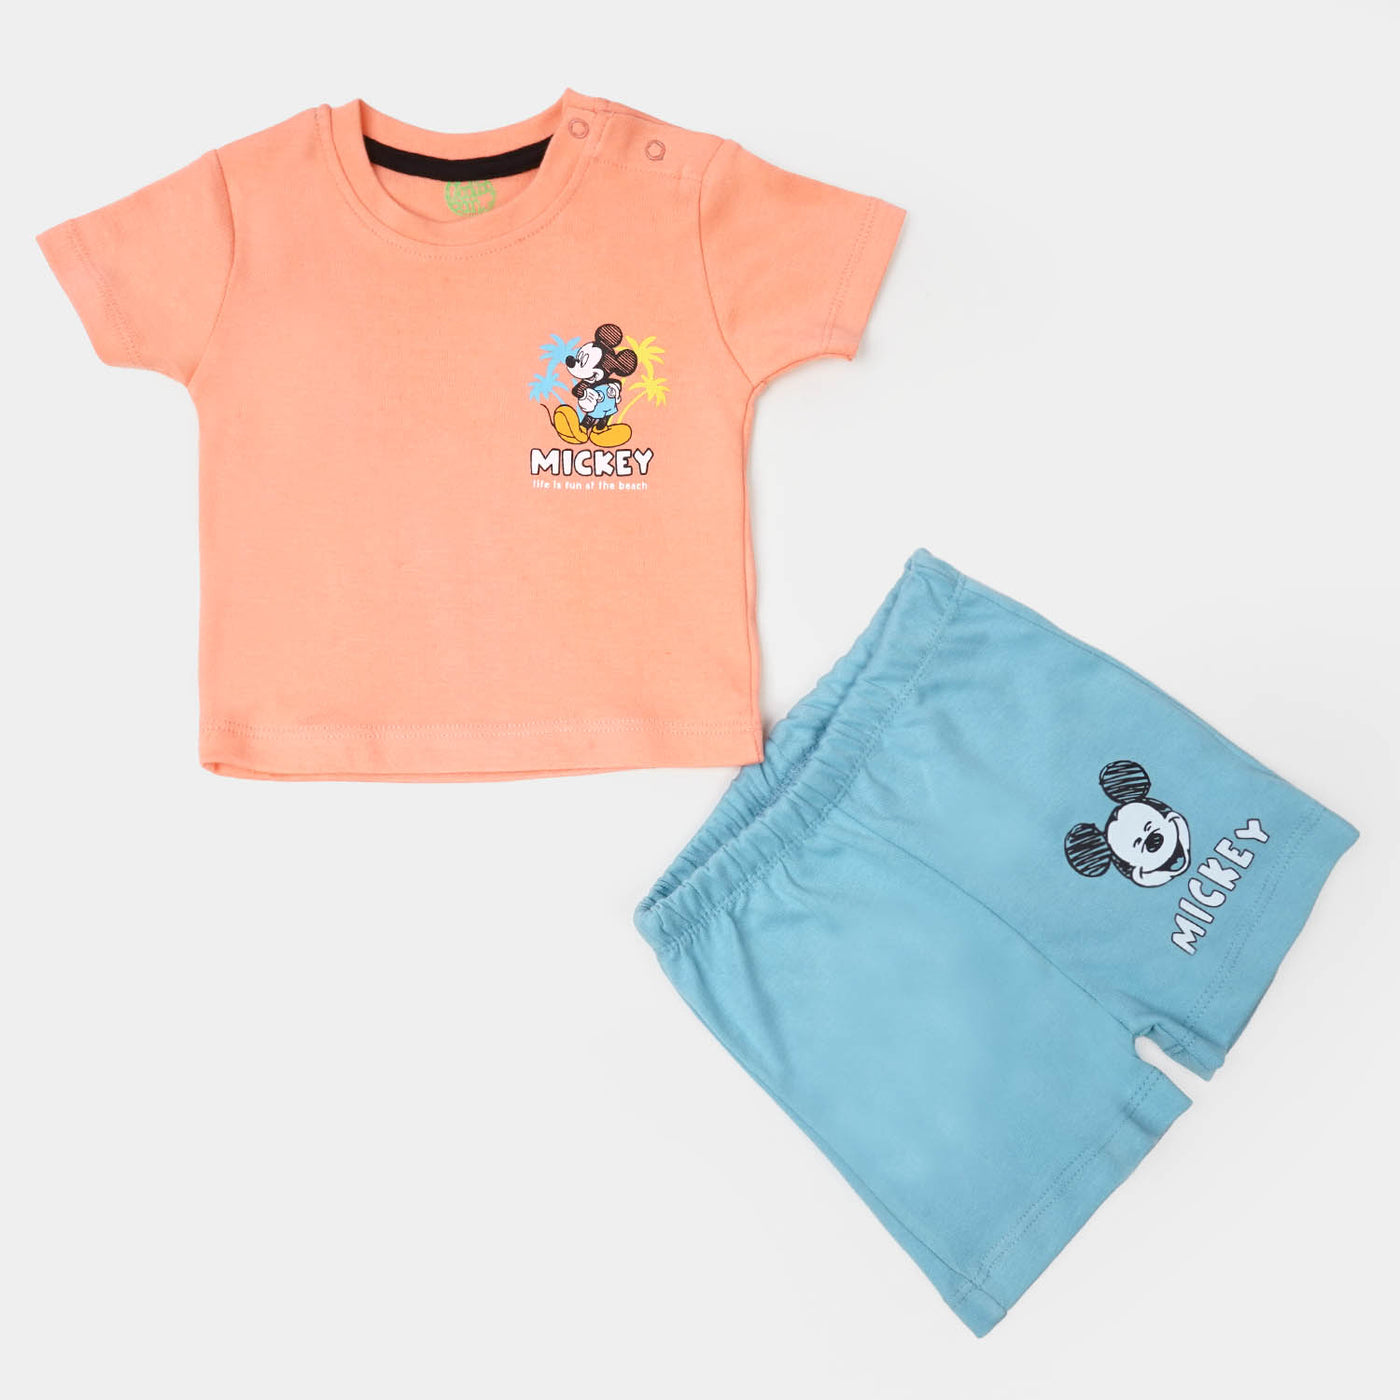 Infant Boys Cotton 2Pcs Suit Character - Pink